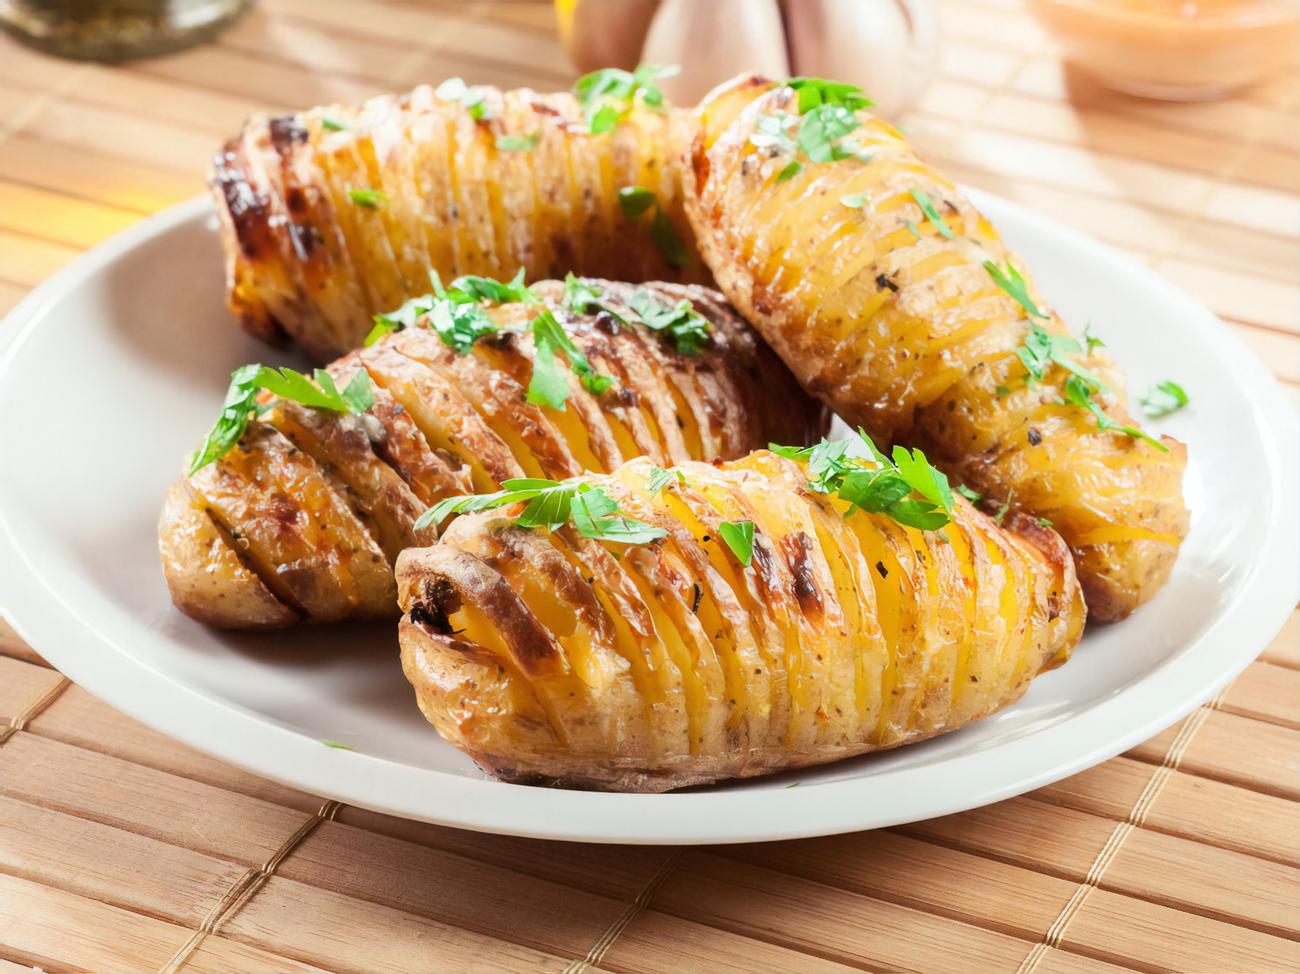 Картошка – рецепты блюд с фото